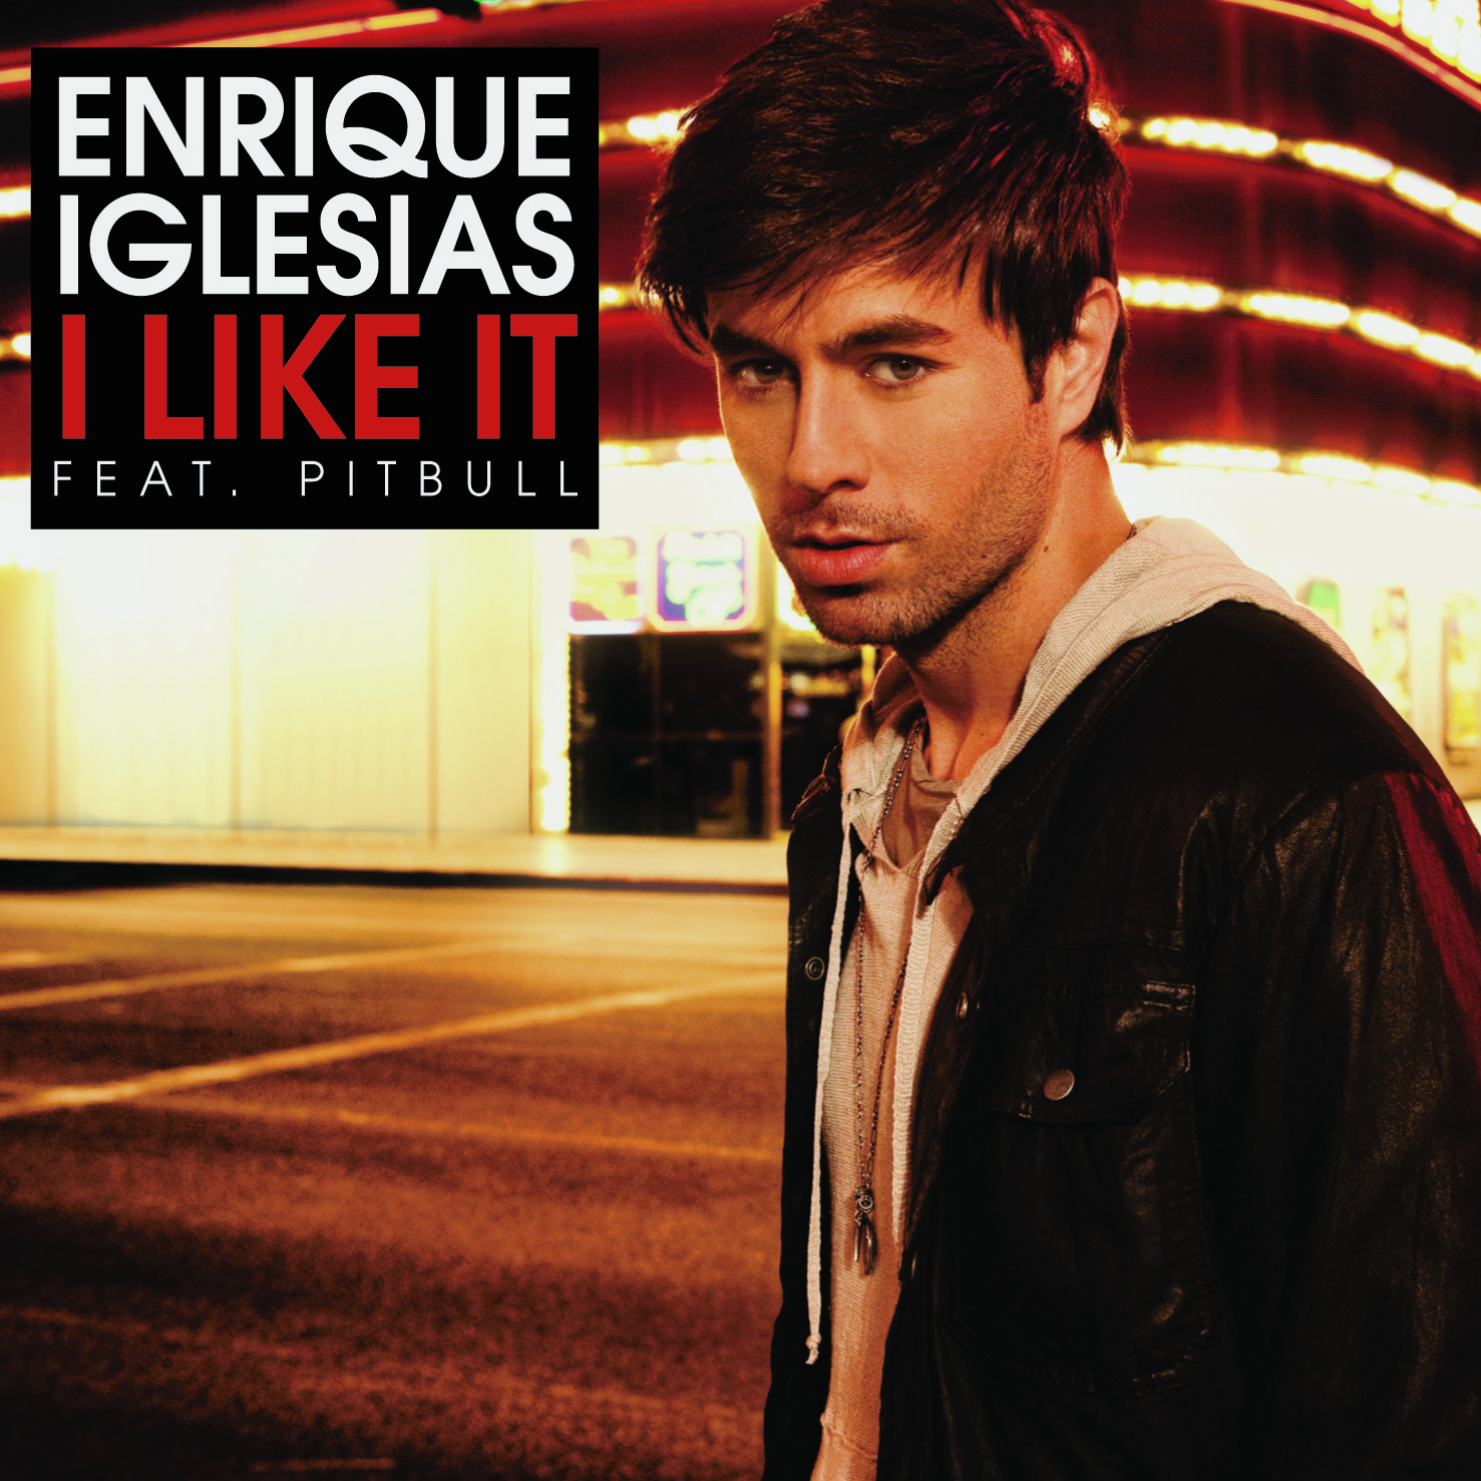 http://1.bp.blogspot.com/-aBLbMFW1_U8/UCKxV0kF4CI/AAAAAAAAACU/BuCh7WjONi4/s1600/Enrique+Iglesias+-+I+Like+It+(Official+Single+Cover).jpg